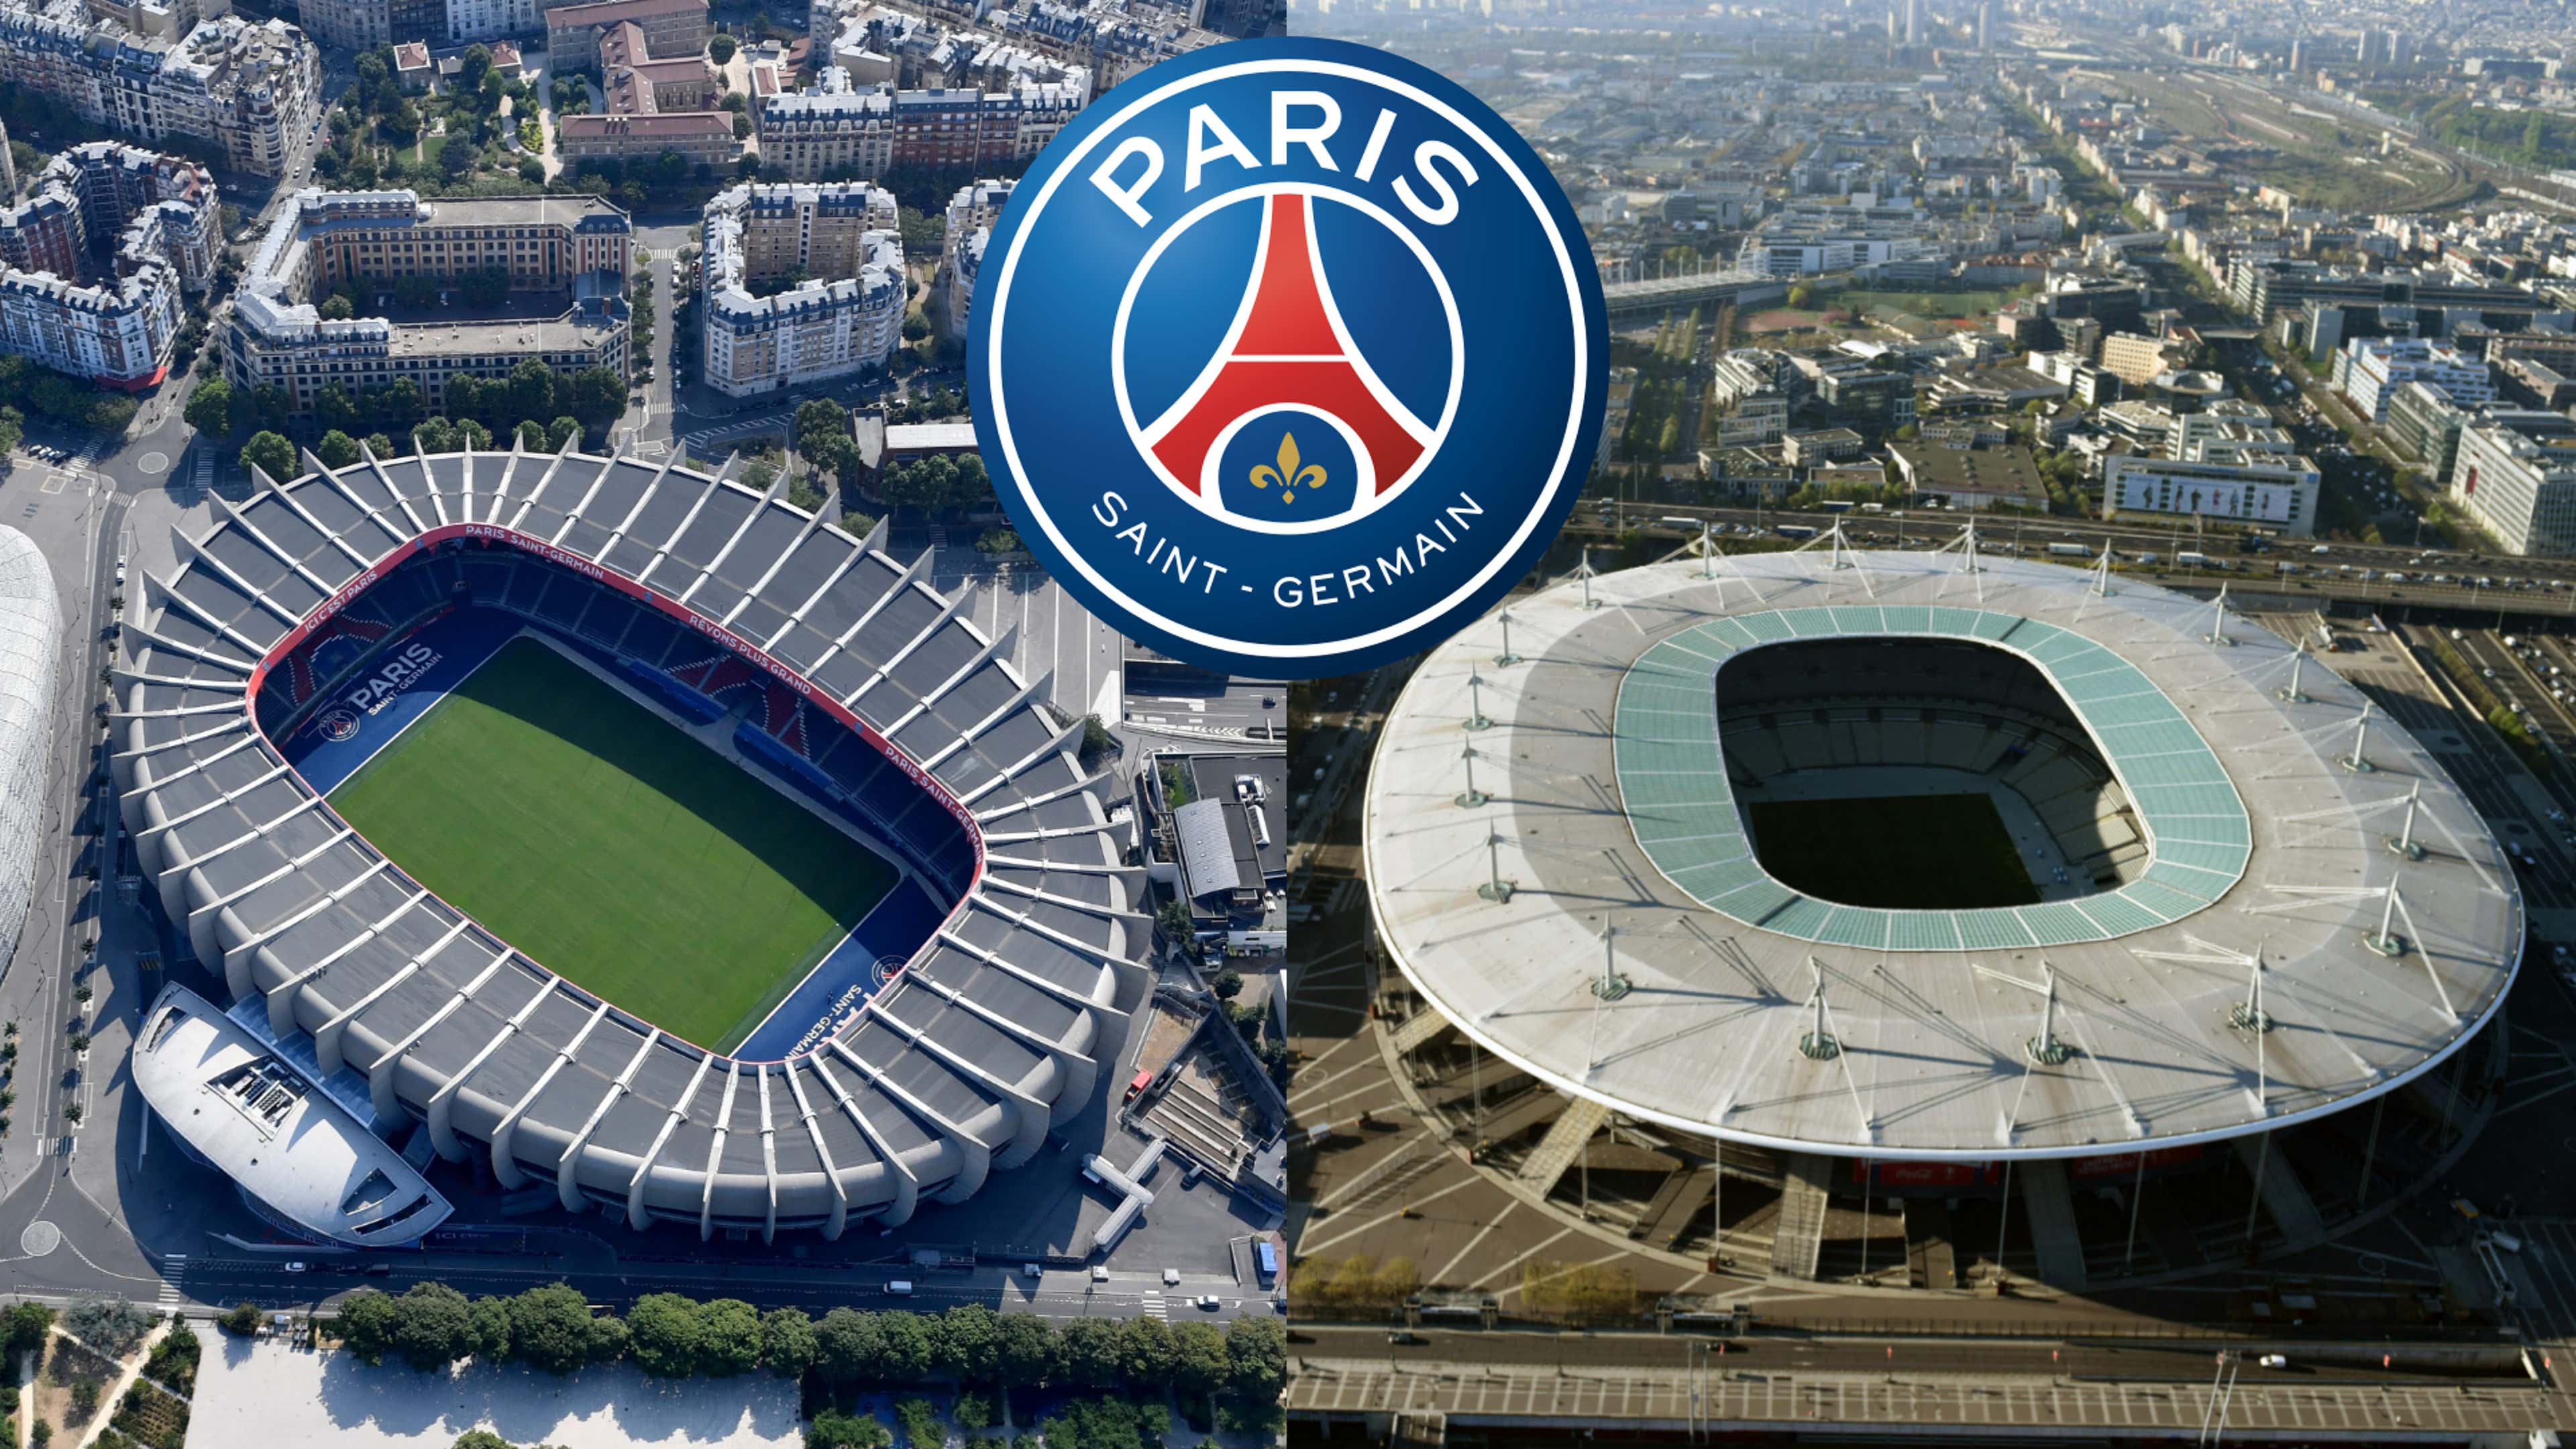 Parc des princes – Stade de France : Et si le PSG faisait le doublé ? |  Goal.com Français